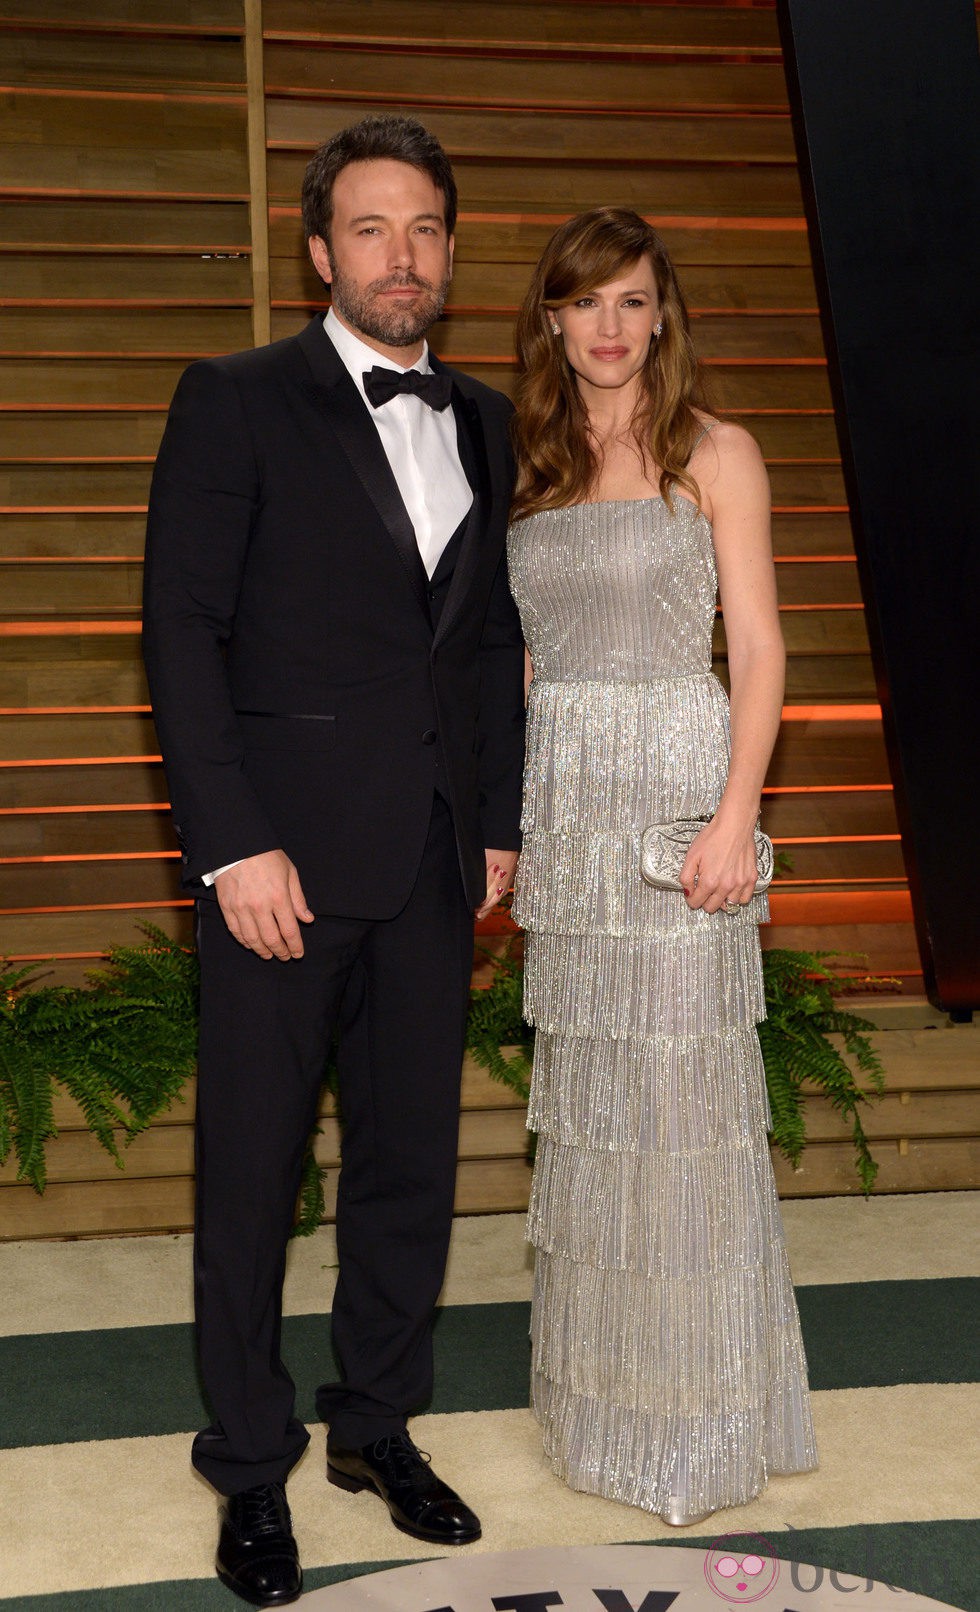 Ben Affleck y Jennifer Garner en la fiesta Vanity Fair tras los Oscar 2014